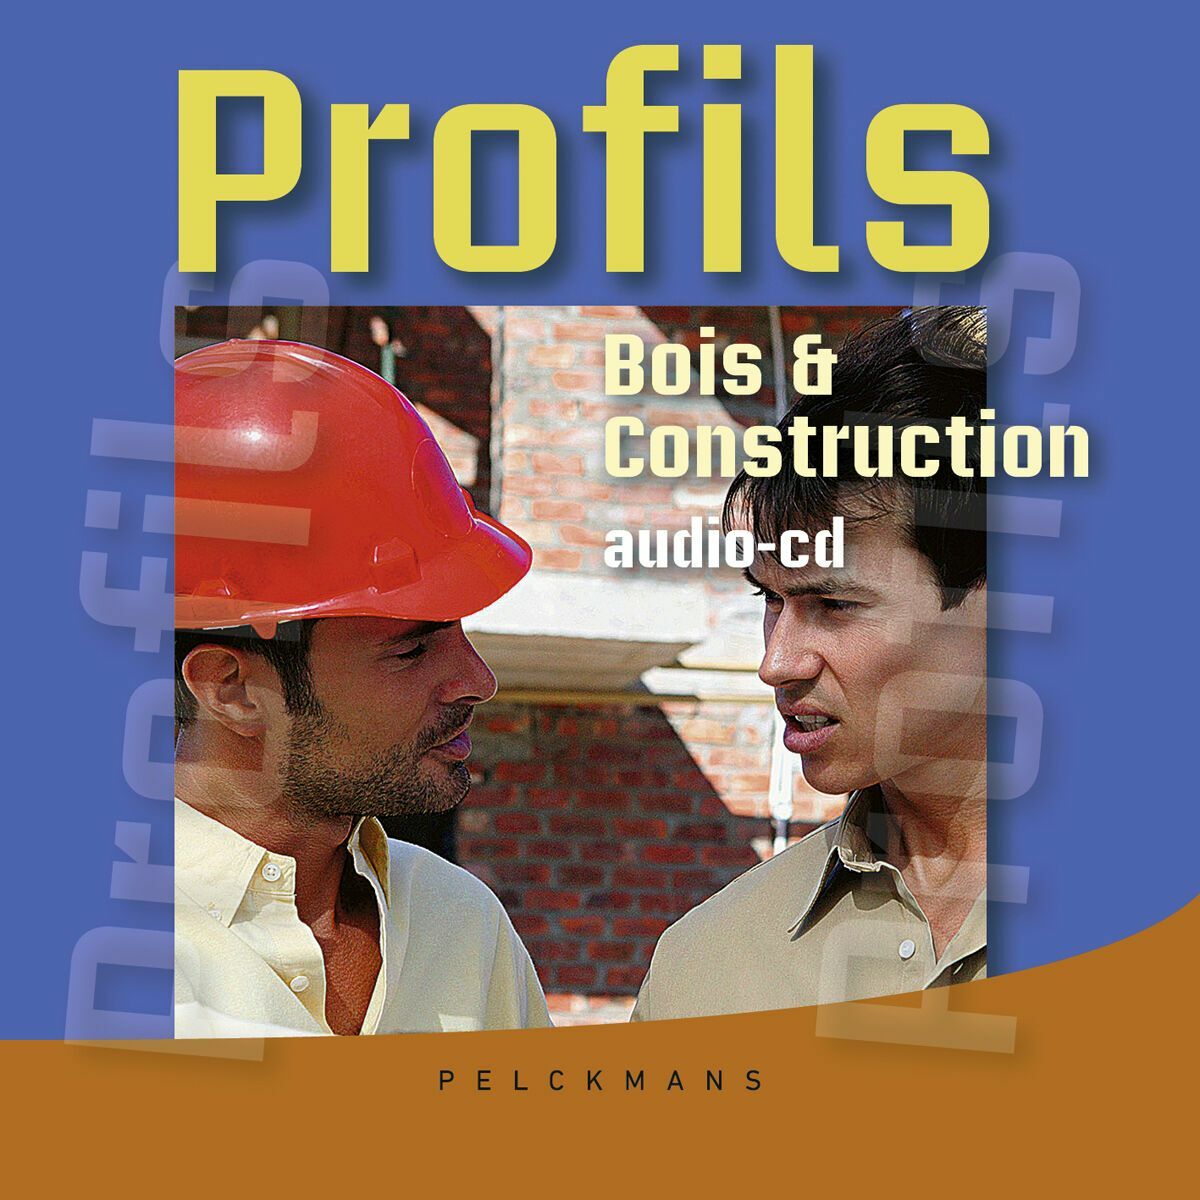 Profils Bois & Construction Audio-cd